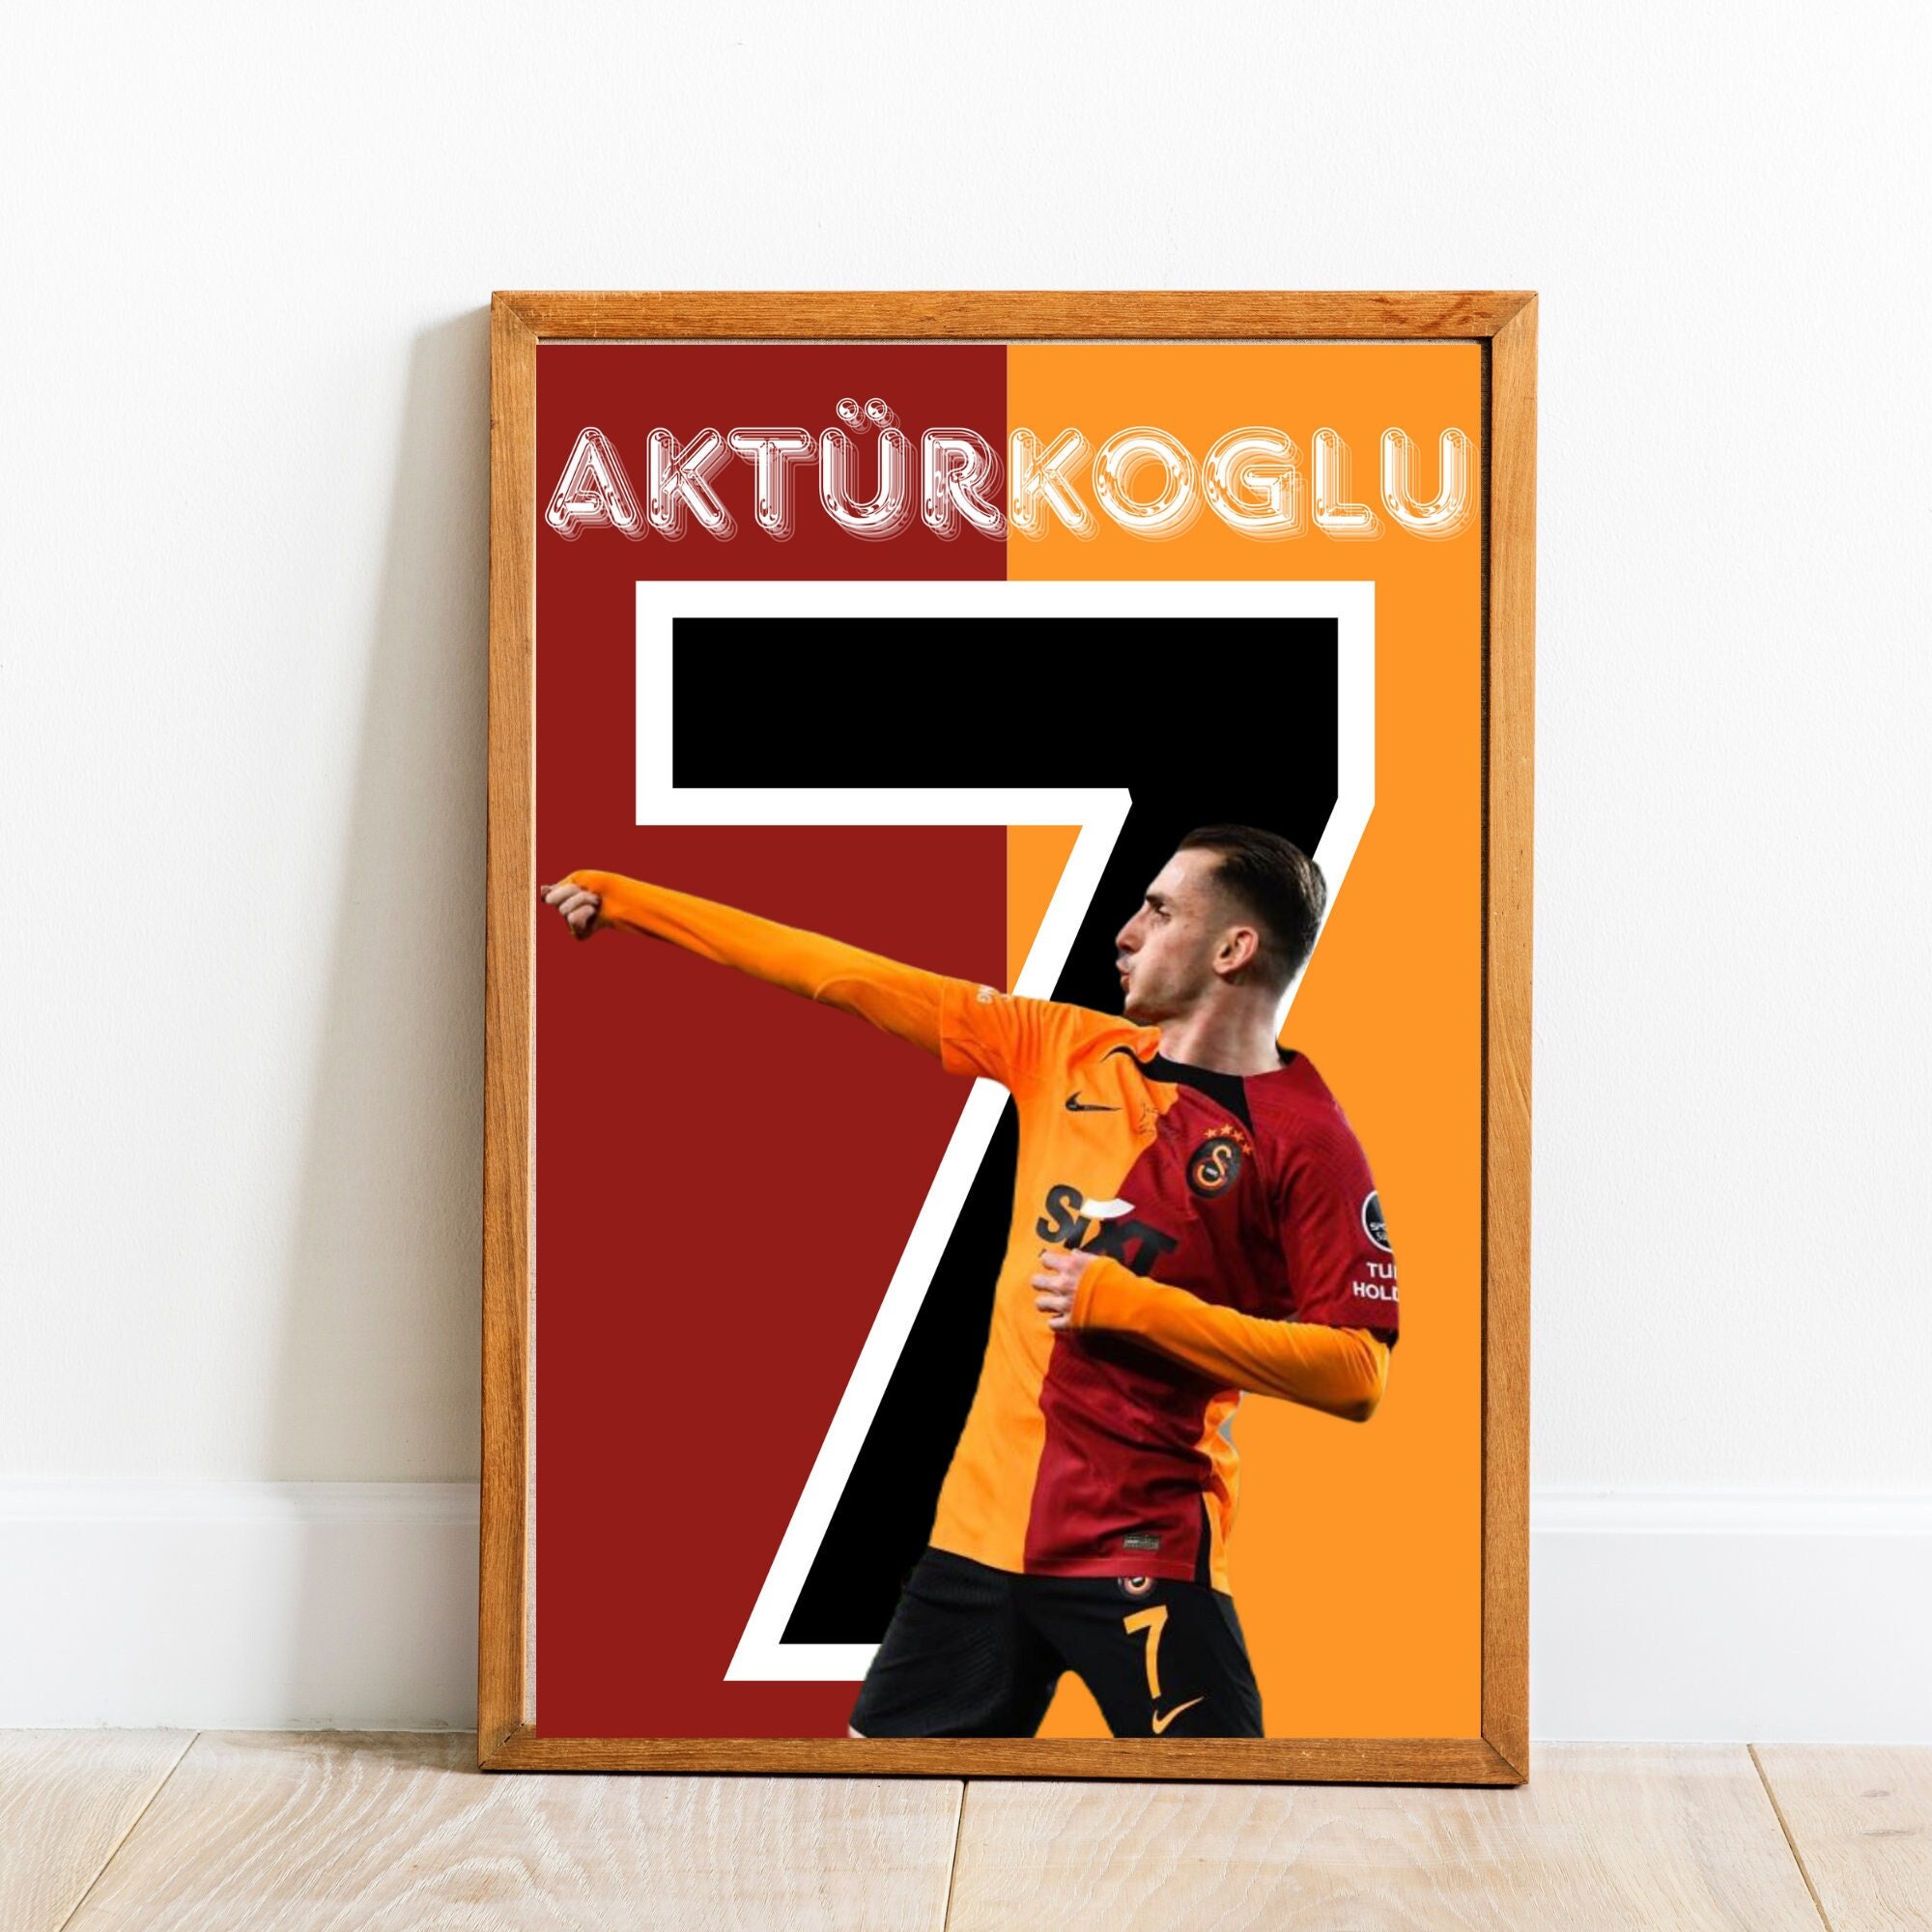 Poster for Sale mit Galatasaray von deniz29